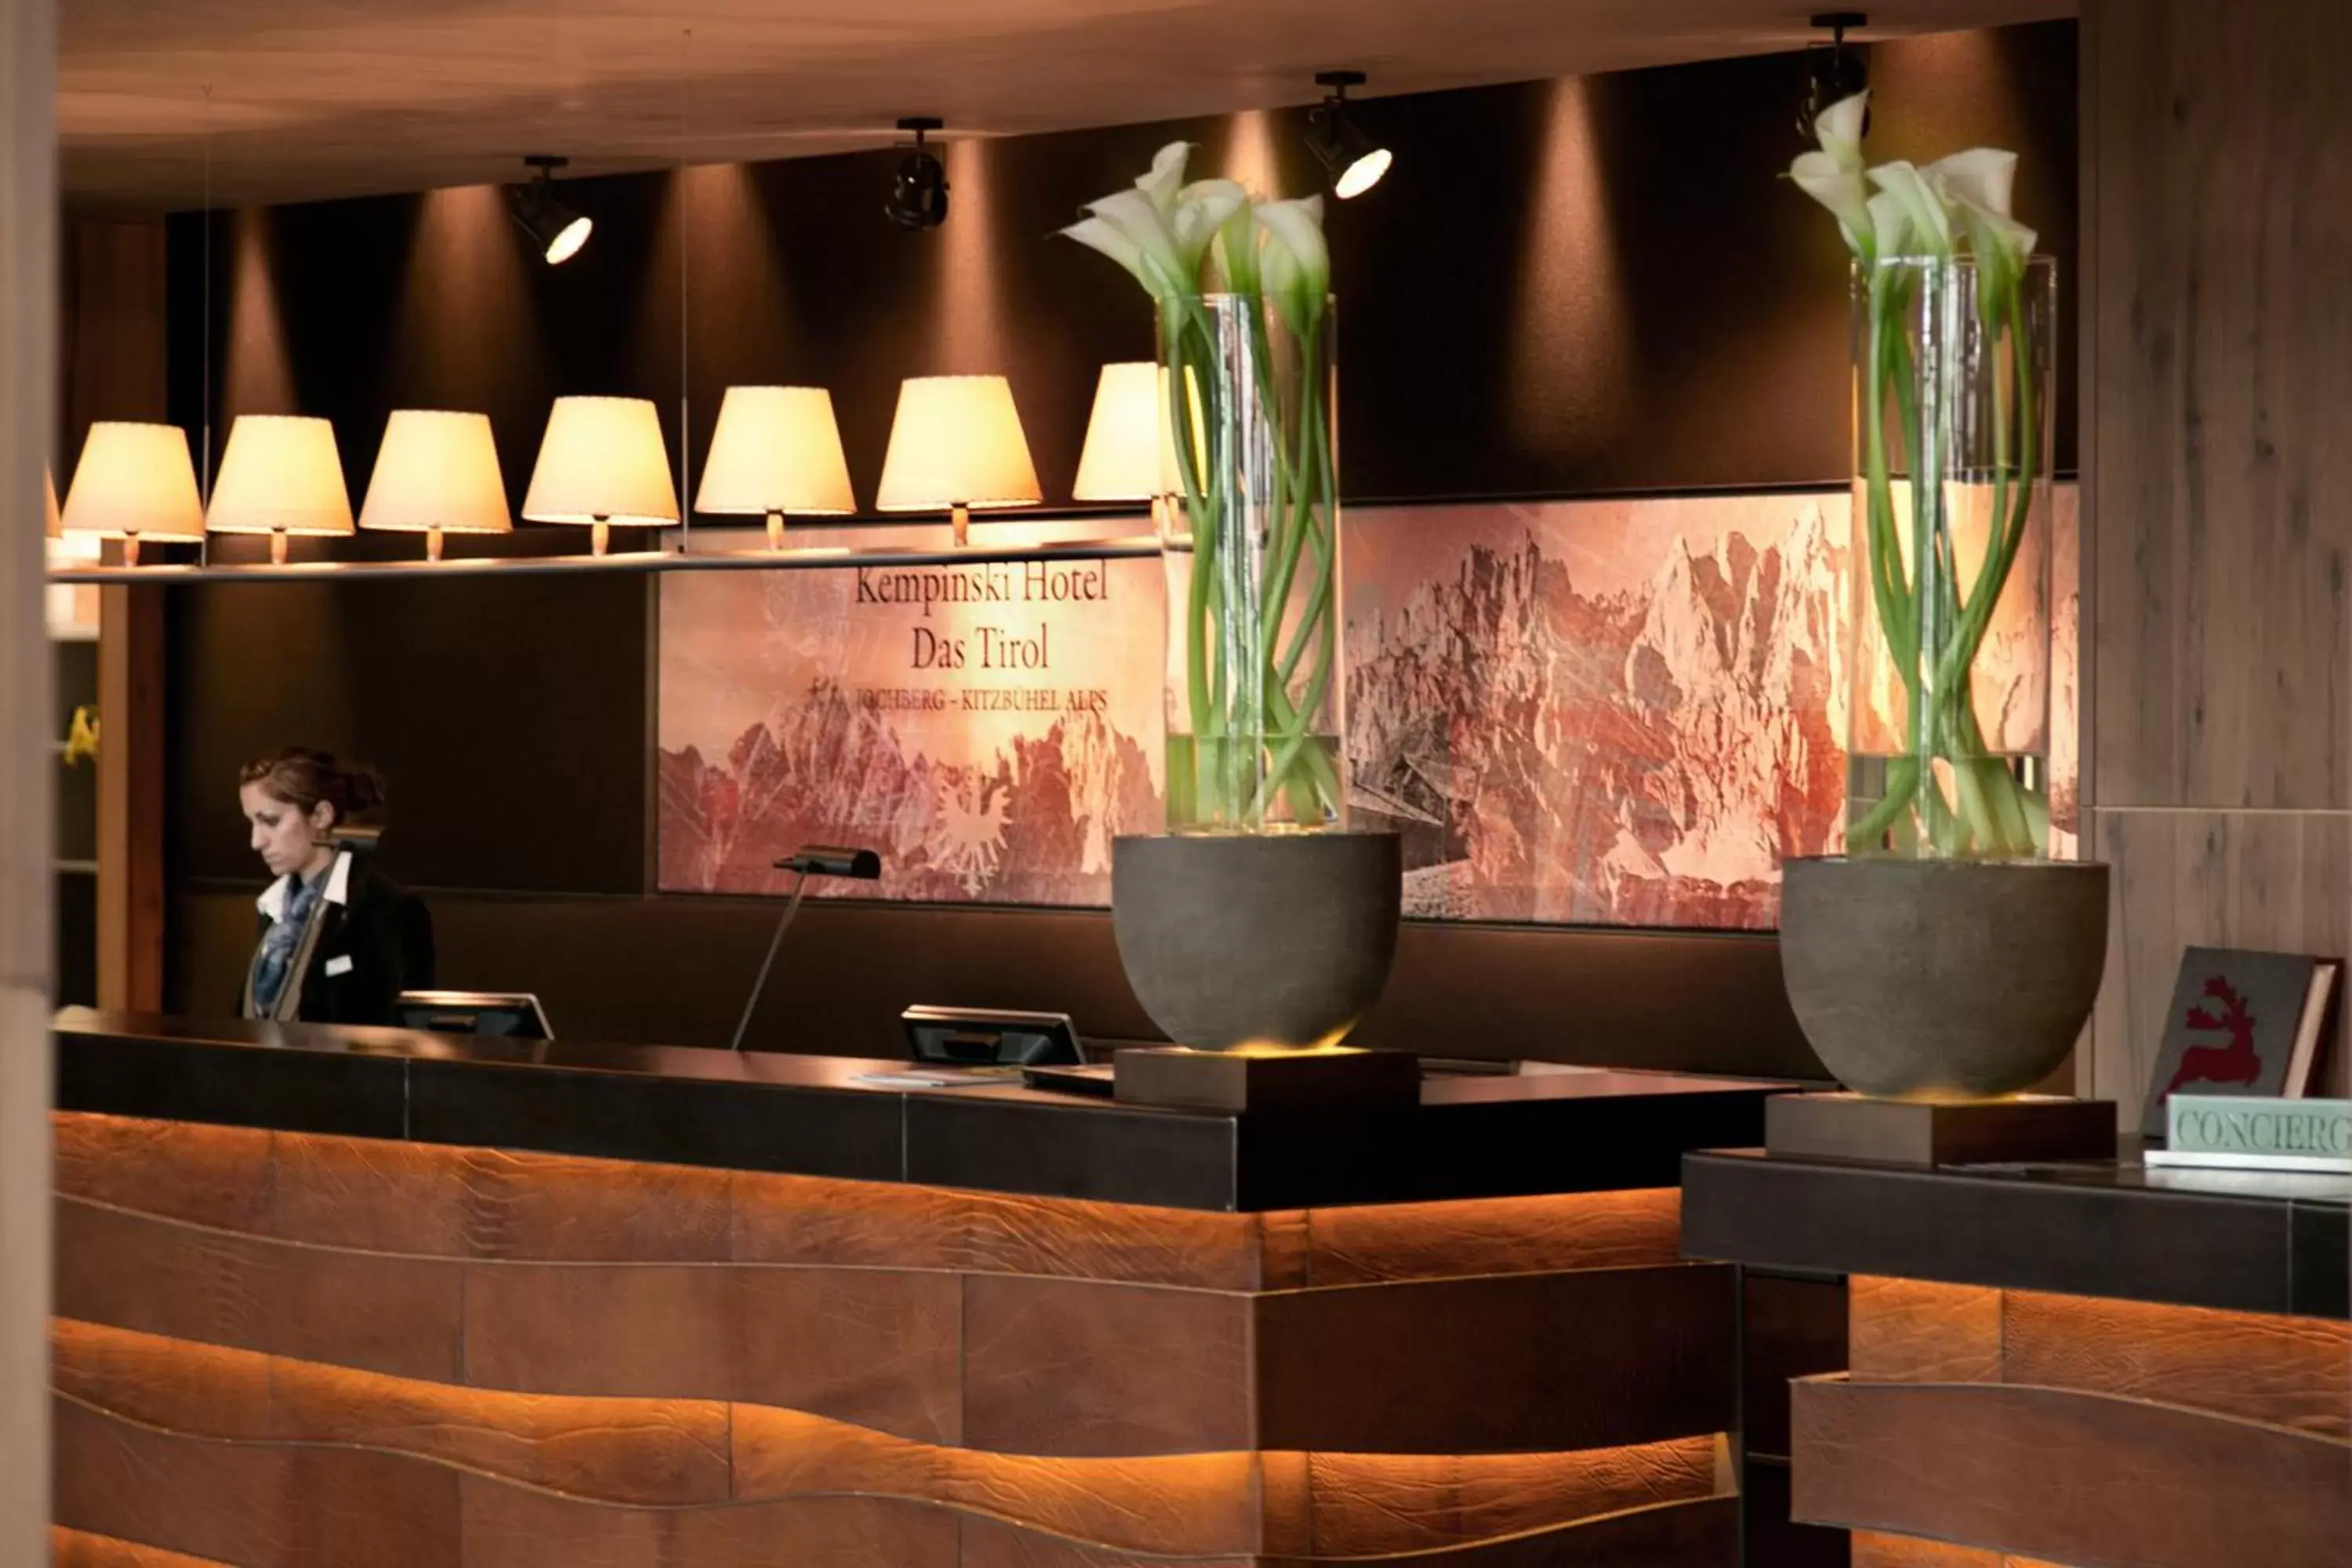 Staff, Lobby/Reception in Kempinski Hotel Das Tirol